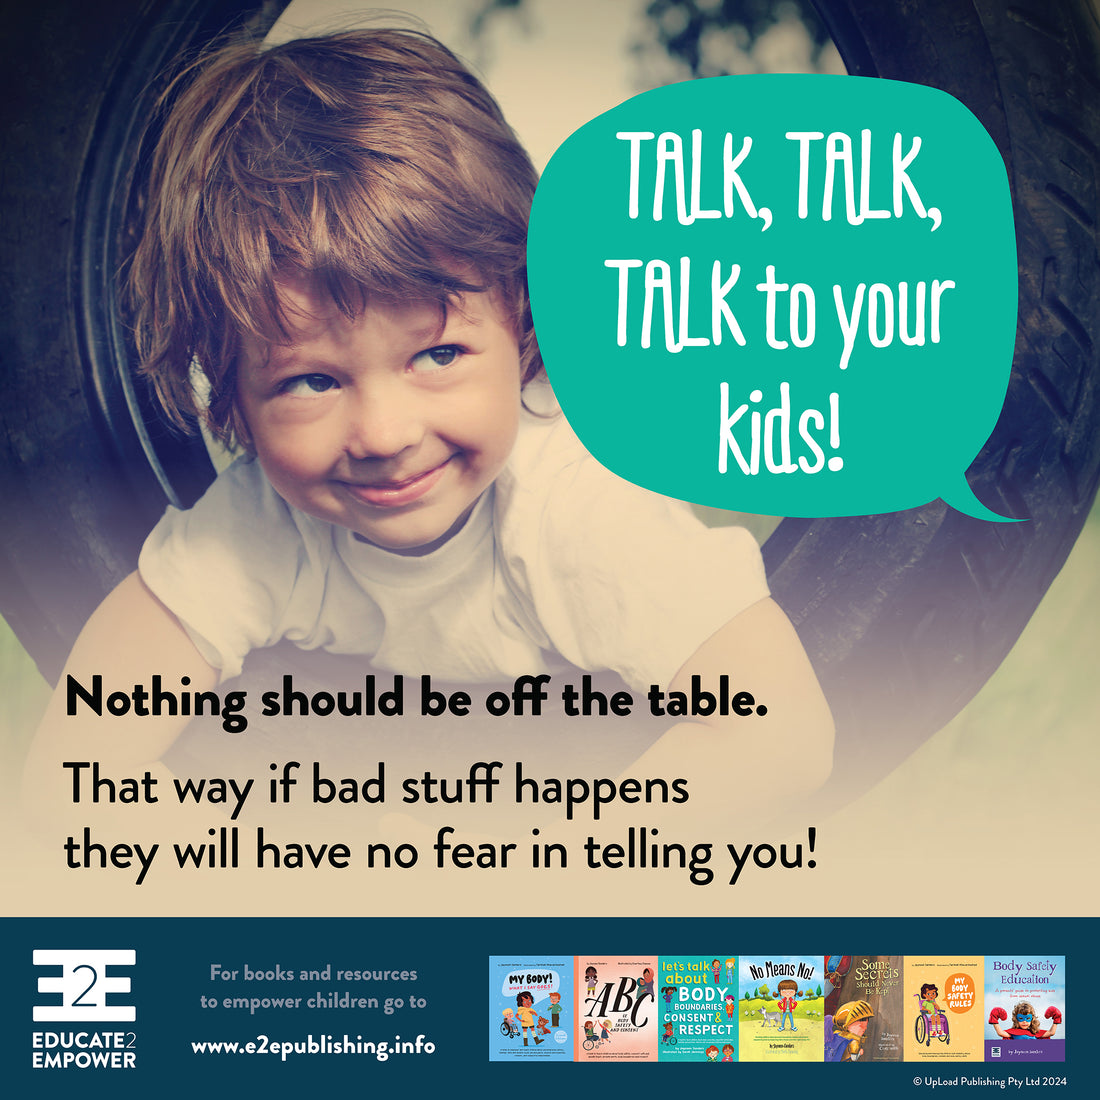 TALK, TALK, TALK to your kids!